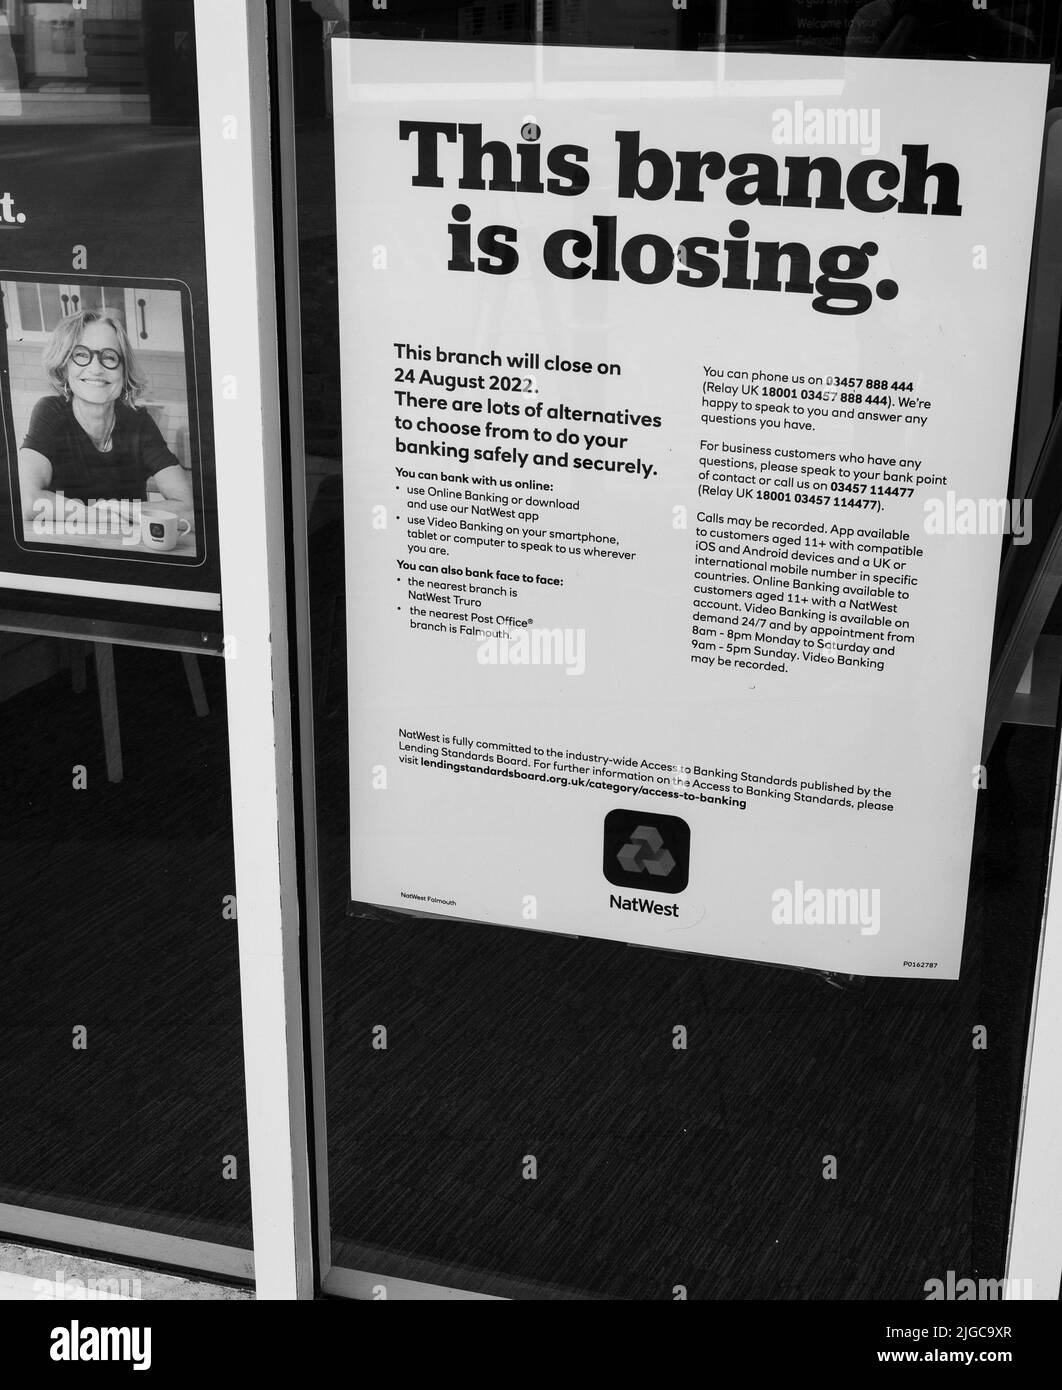 Imagen en blanco y negro de Natwest Bank Closing , Falmouth, Cornwall, Inglaterra, Reino Unido, GB. Foto de stock